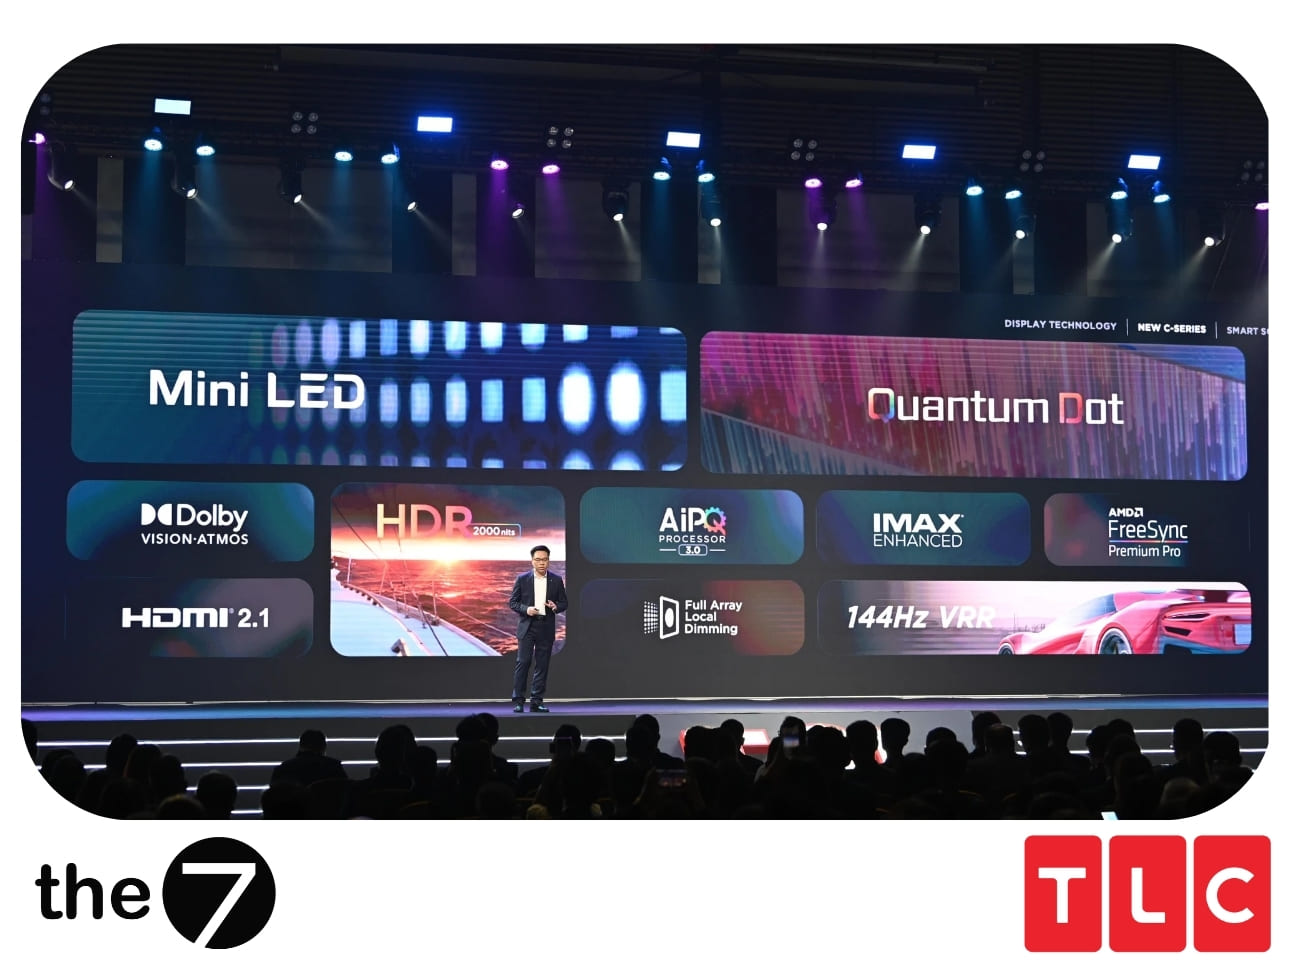 Chiến dịch tăng trưởng lượt tiếp cận cho sự kiện ra mắt thương hiệu TV mini LED TCL 8-Series